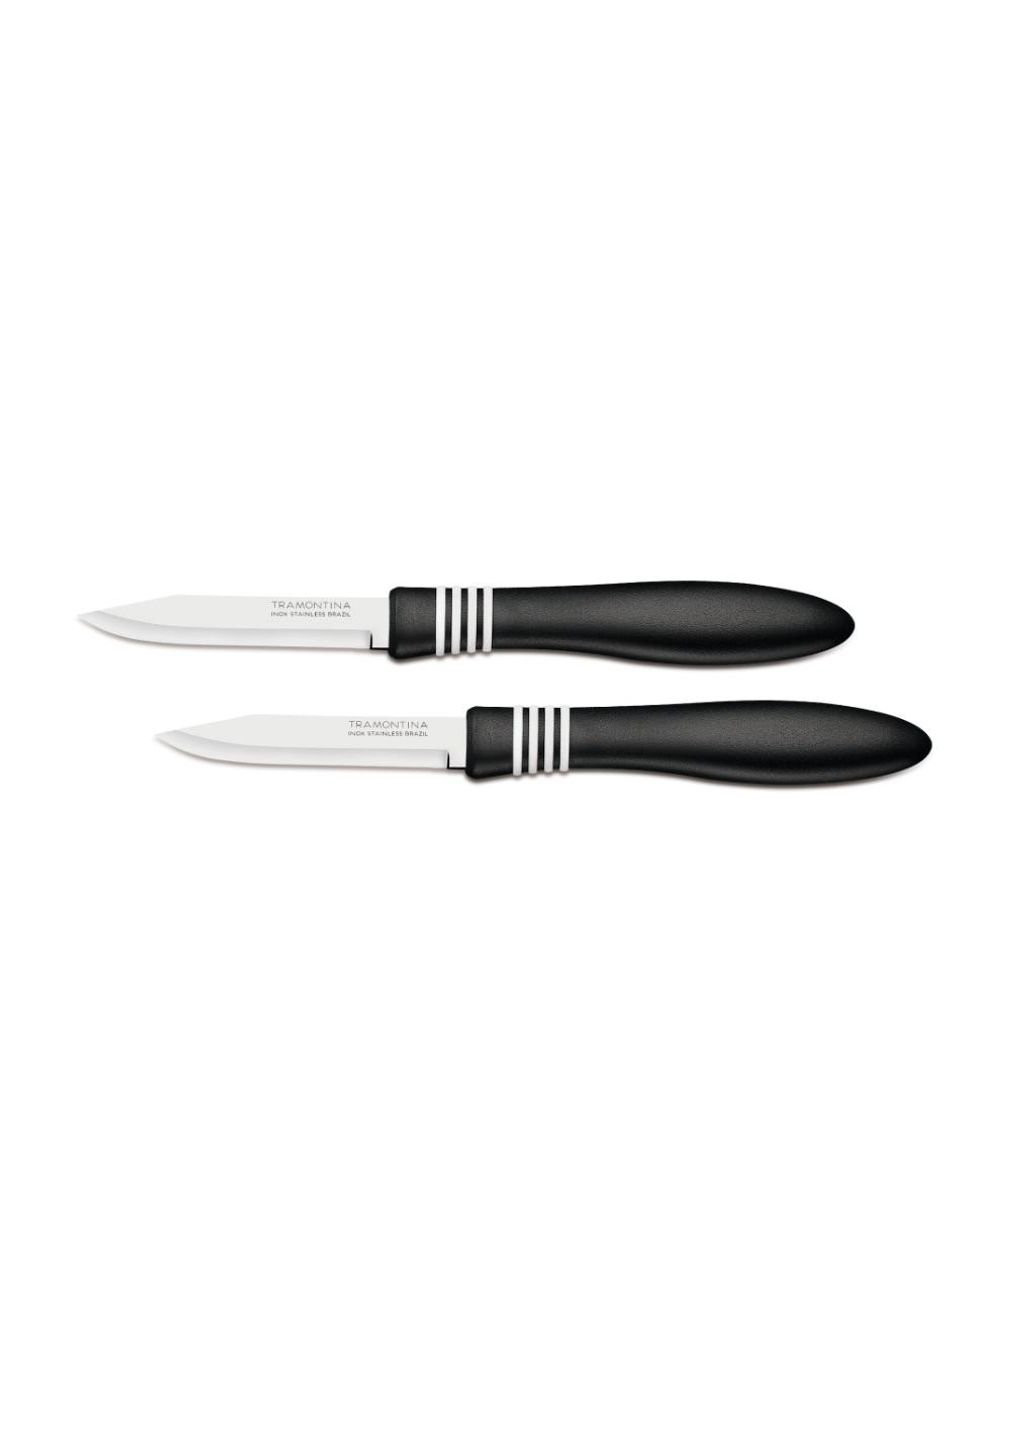 Набор ножей COR & COR для овощей 2шт 76 мм Black (23461/203) Tramontina чёрные,